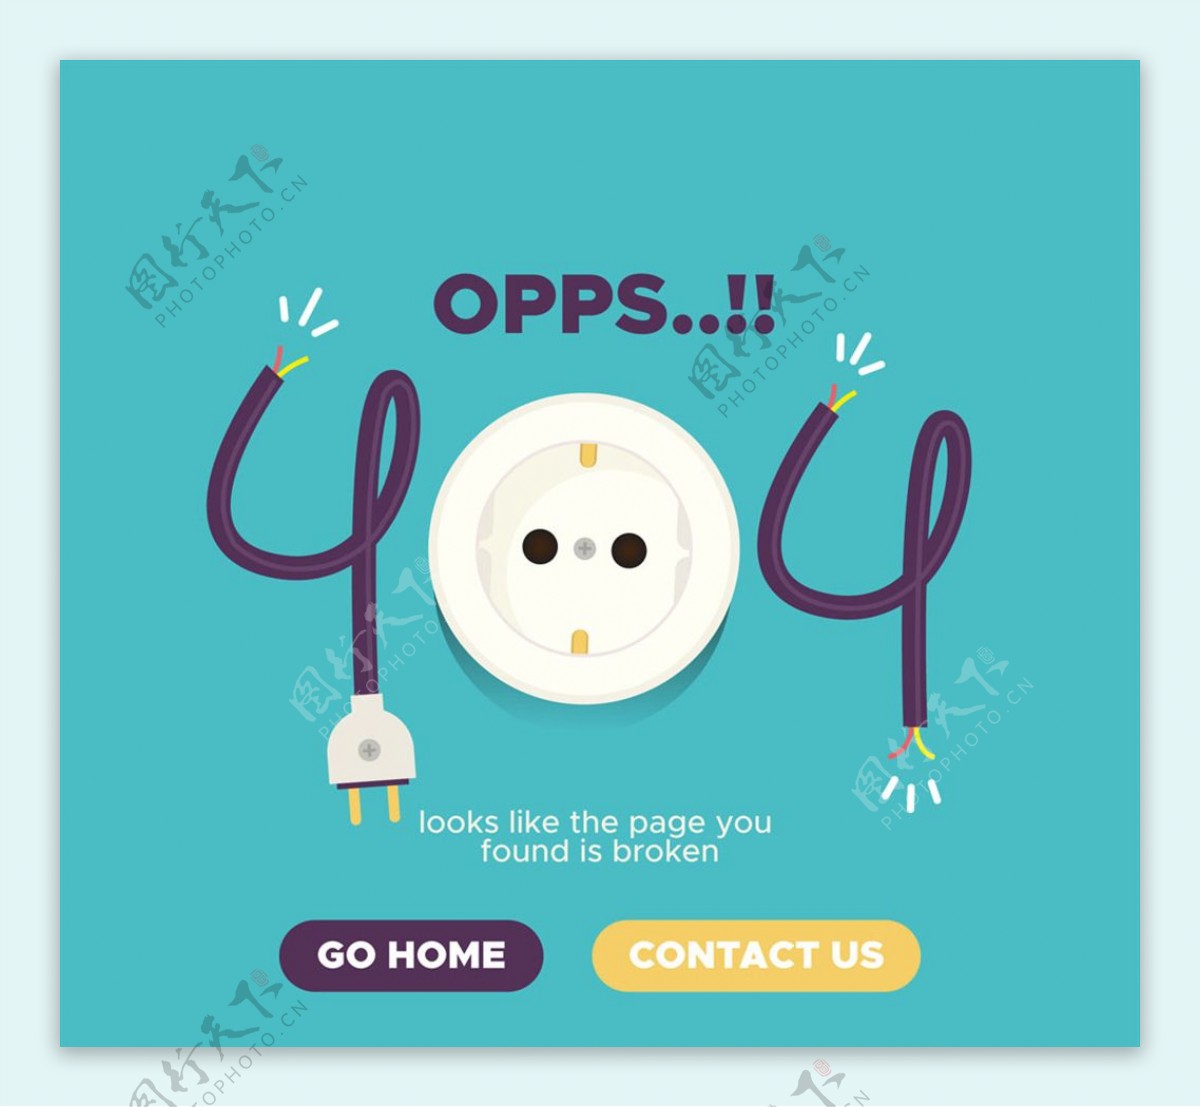 创意404错误页面插座矢量素材